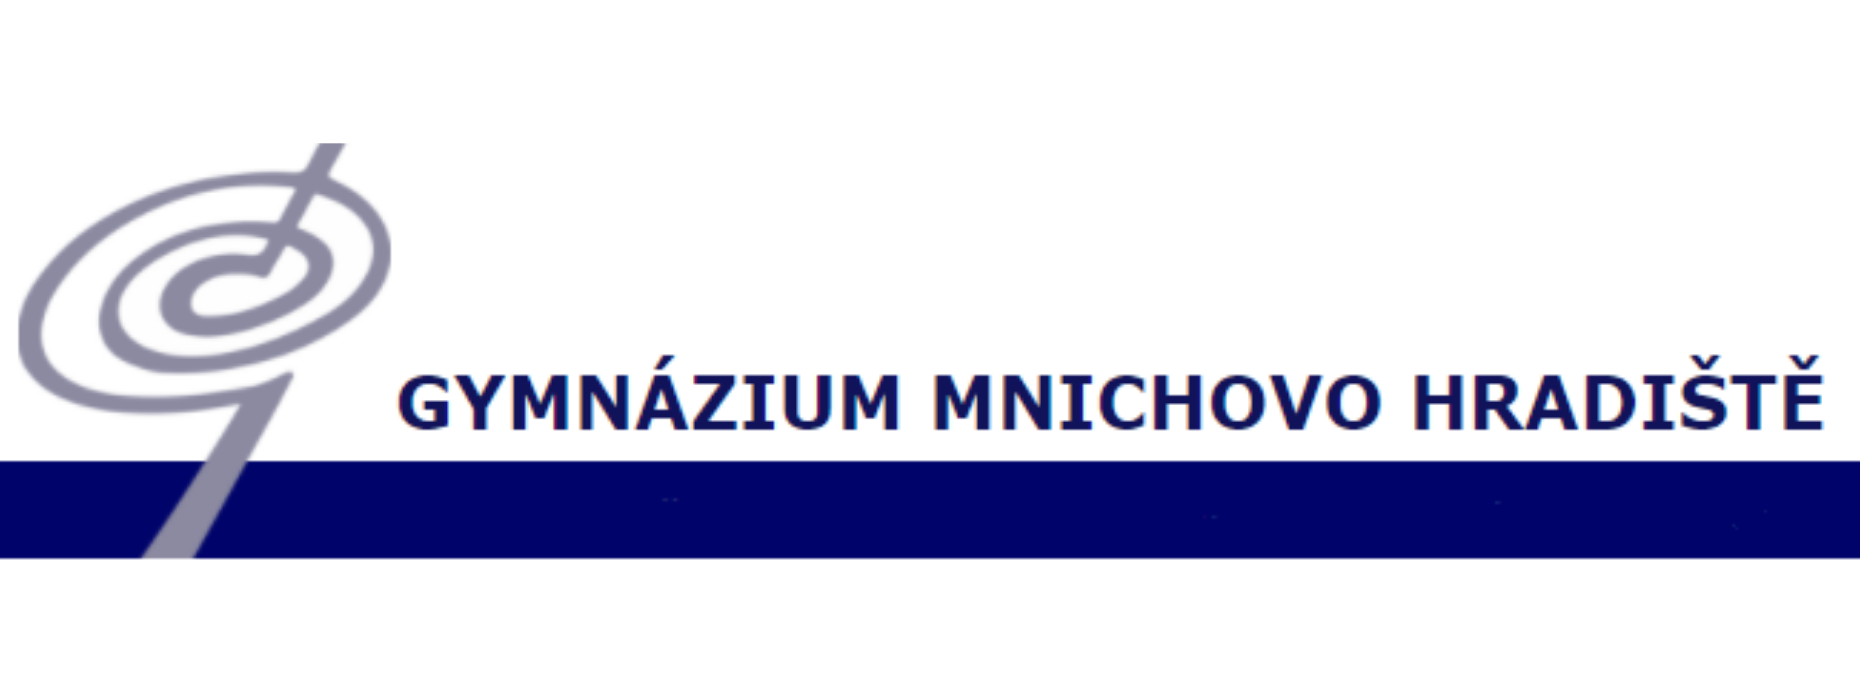 Gymnázium Mnichovo Hradiště Logo